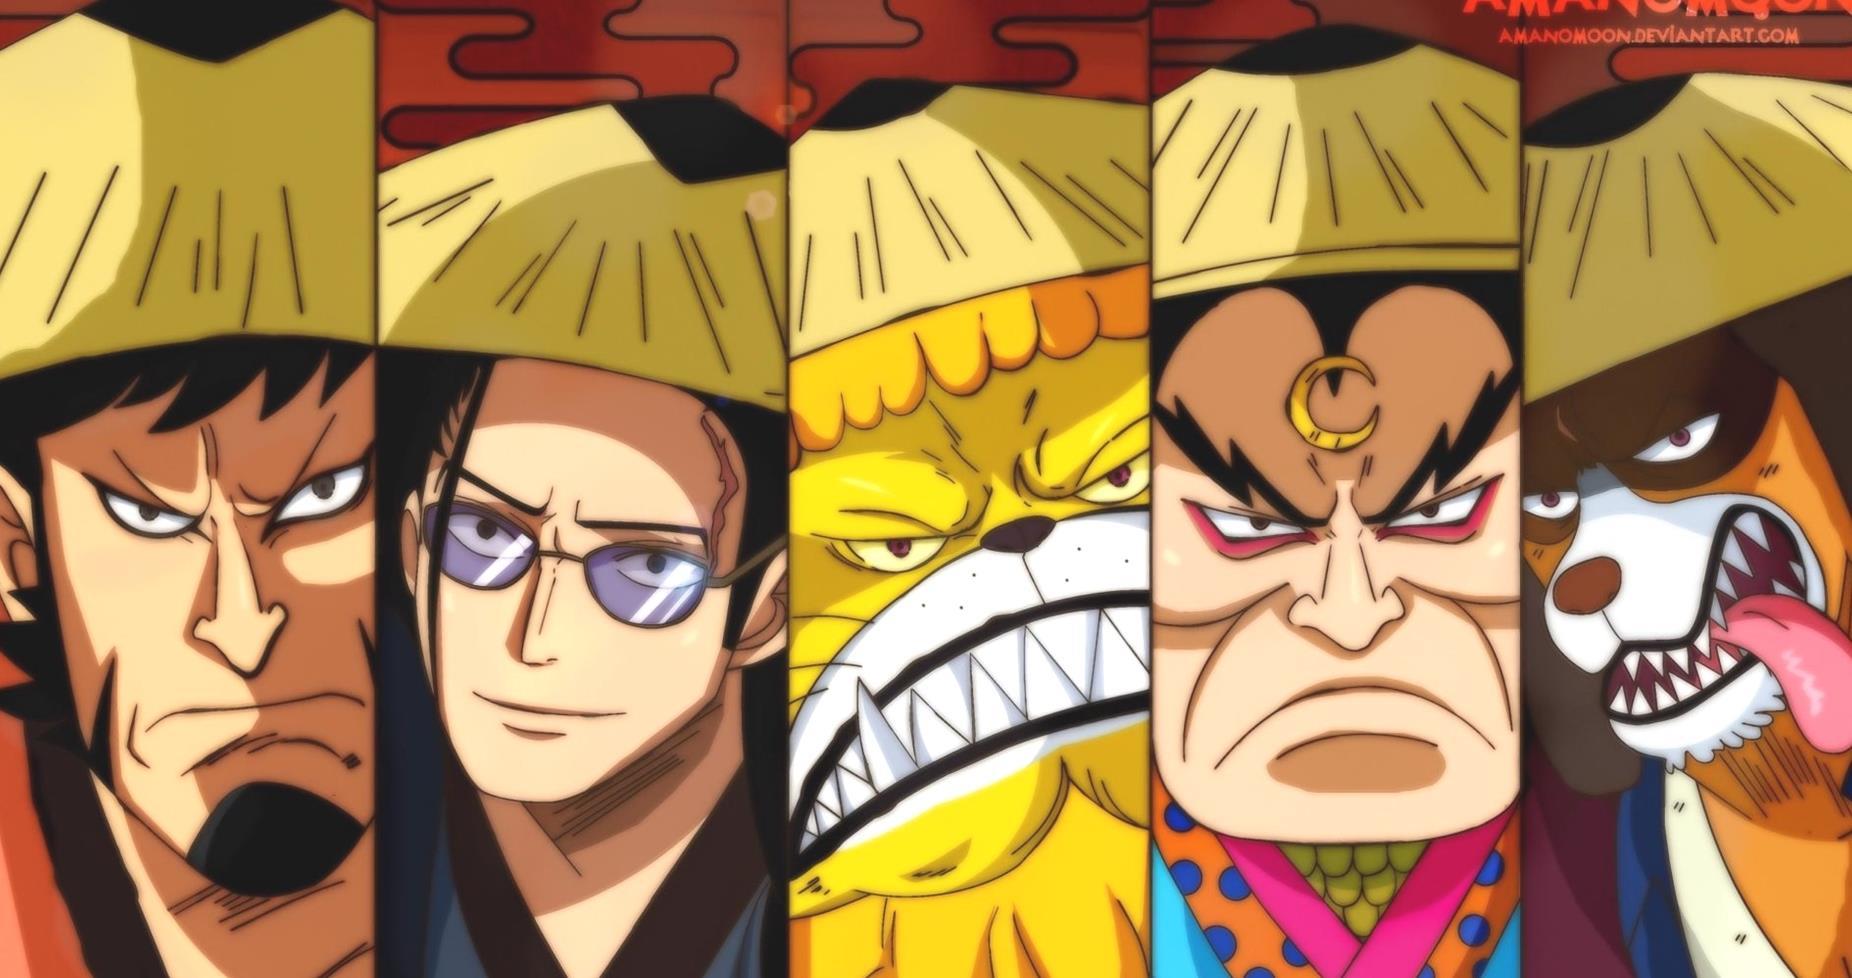 Riassunto dellepisodio 1004 di One Piece vuJRjo 3 5